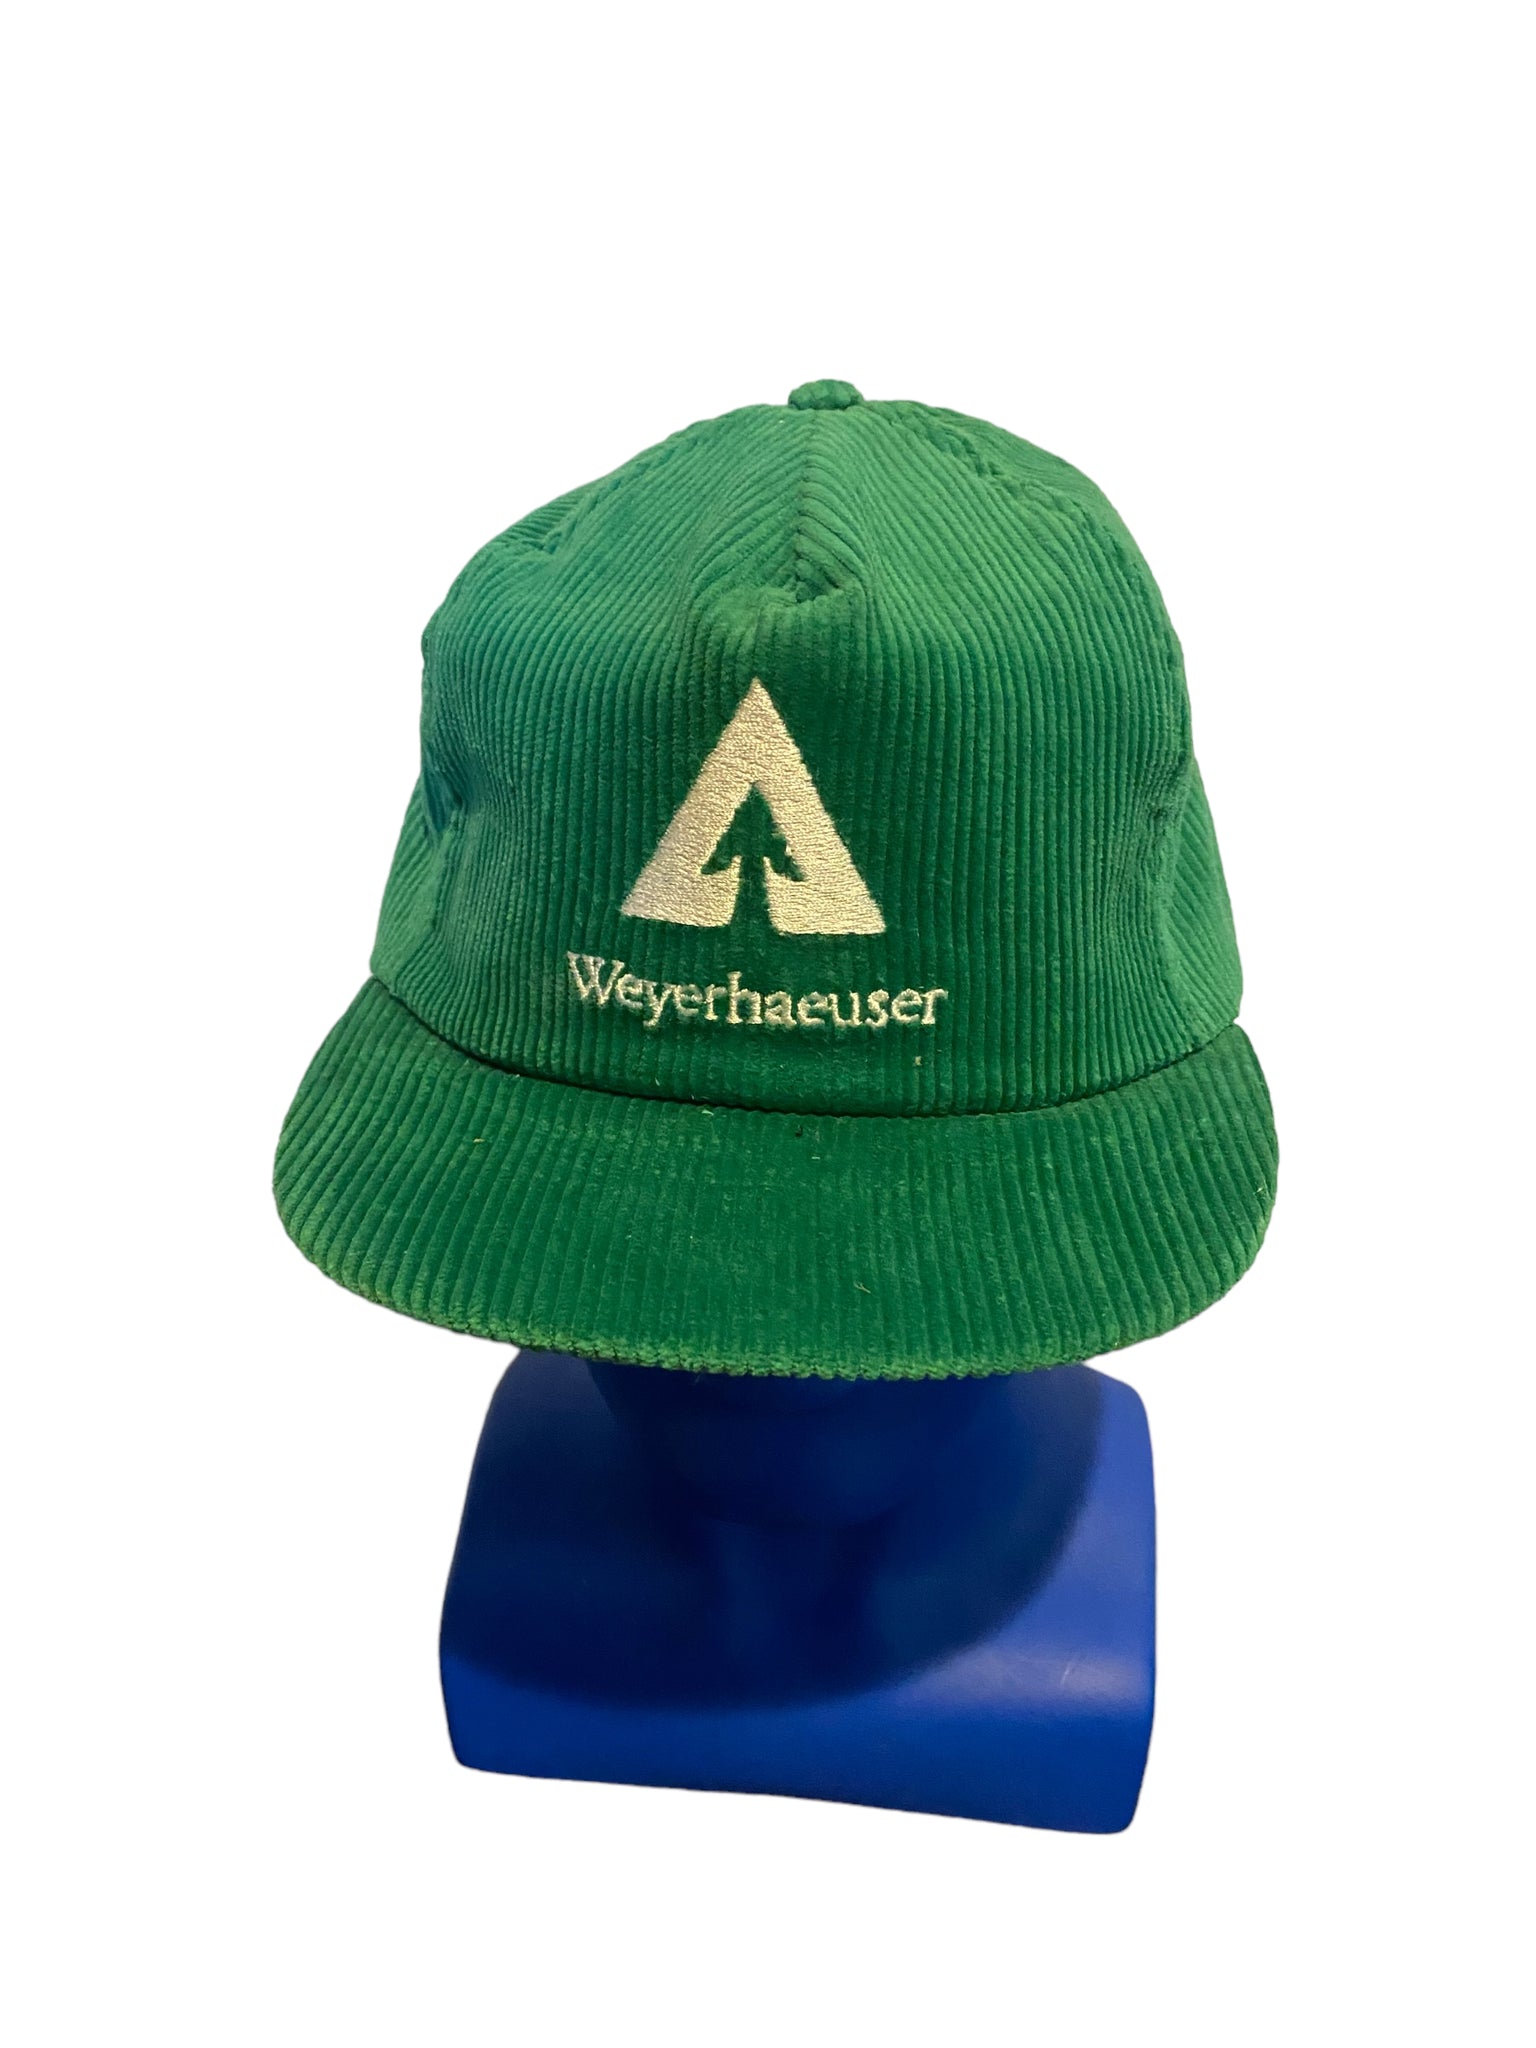 vintage weyerhaeuser corduroy green snapback hat